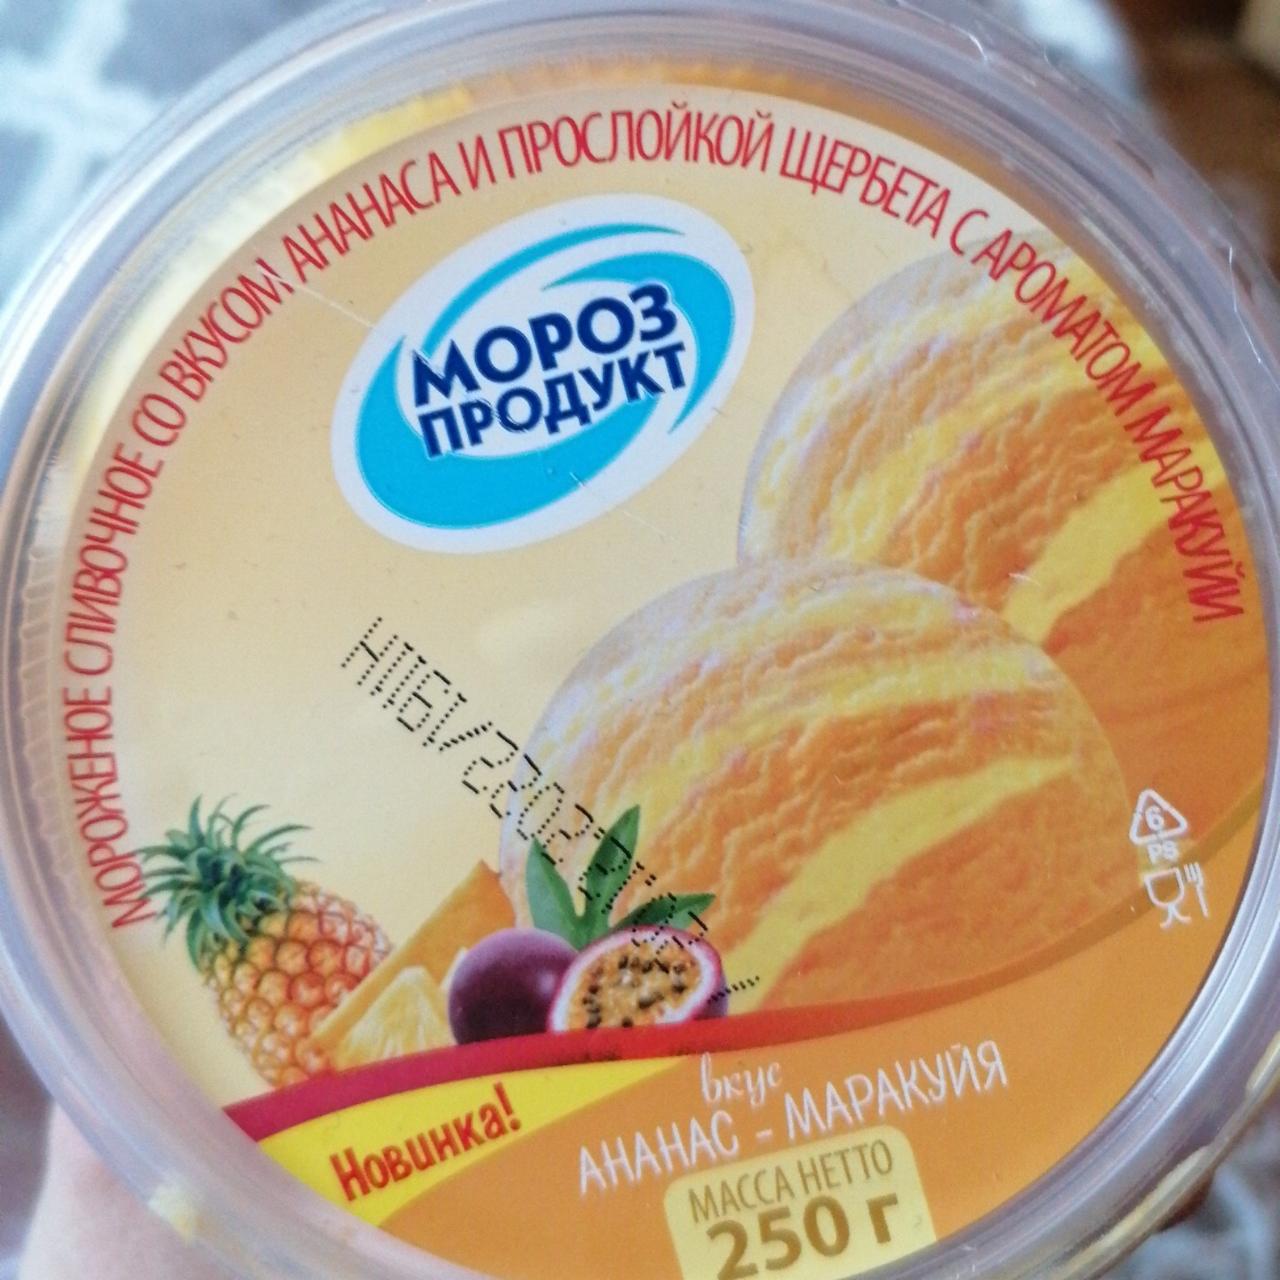 Фото - Мороженое ананас маракуйя Морозпродукт